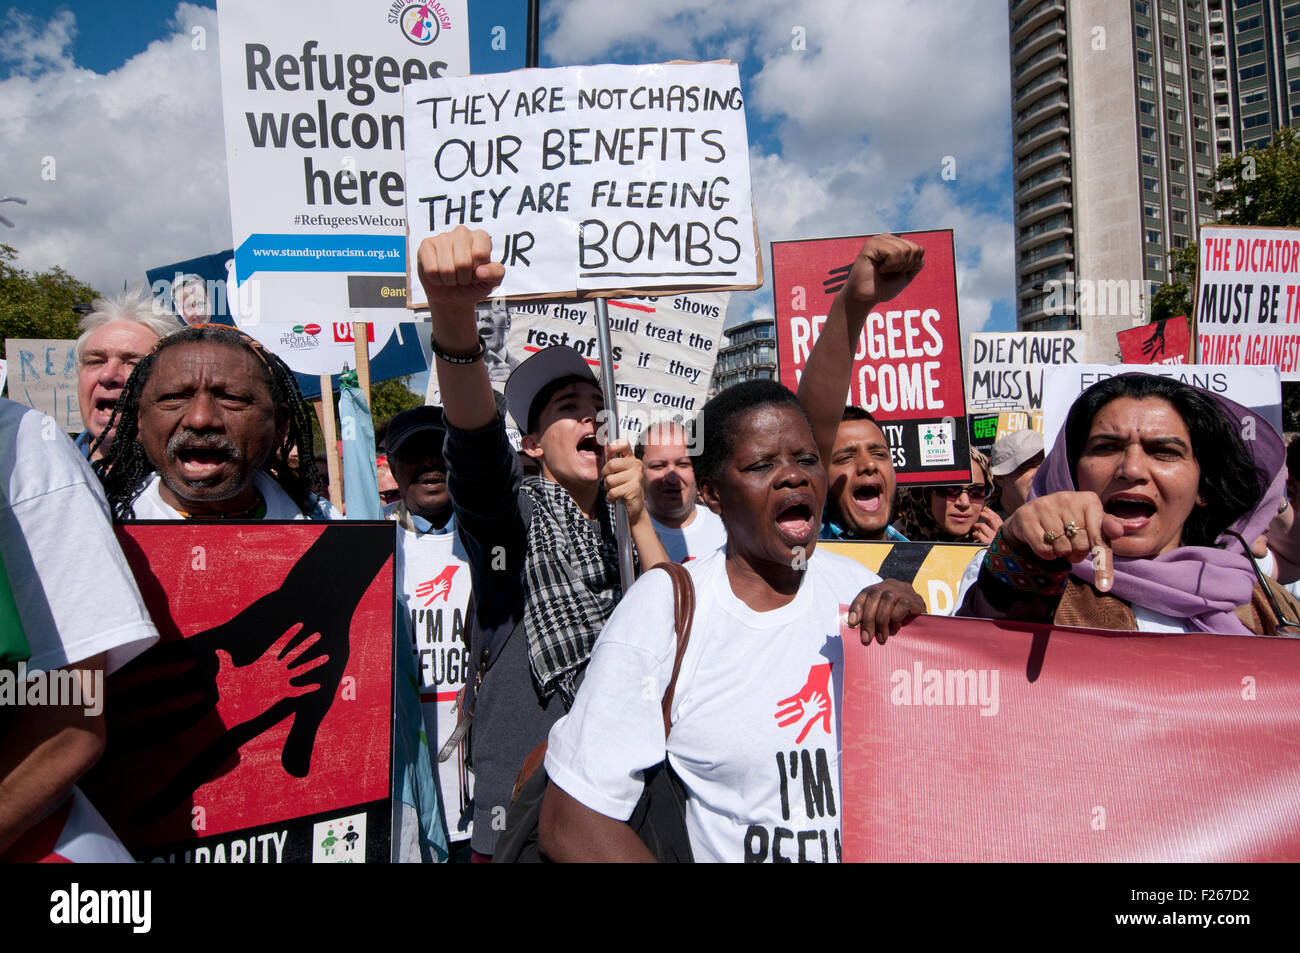 London, UK. 12. Sep, 2015. Tausende marschieren durch die Straßen von London in Solidarität mit den Flüchtlingskrise Eintritt. Bildnachweis: Janine Wiedel Photolibrary/Alamy Live-Nachrichten Stockfoto